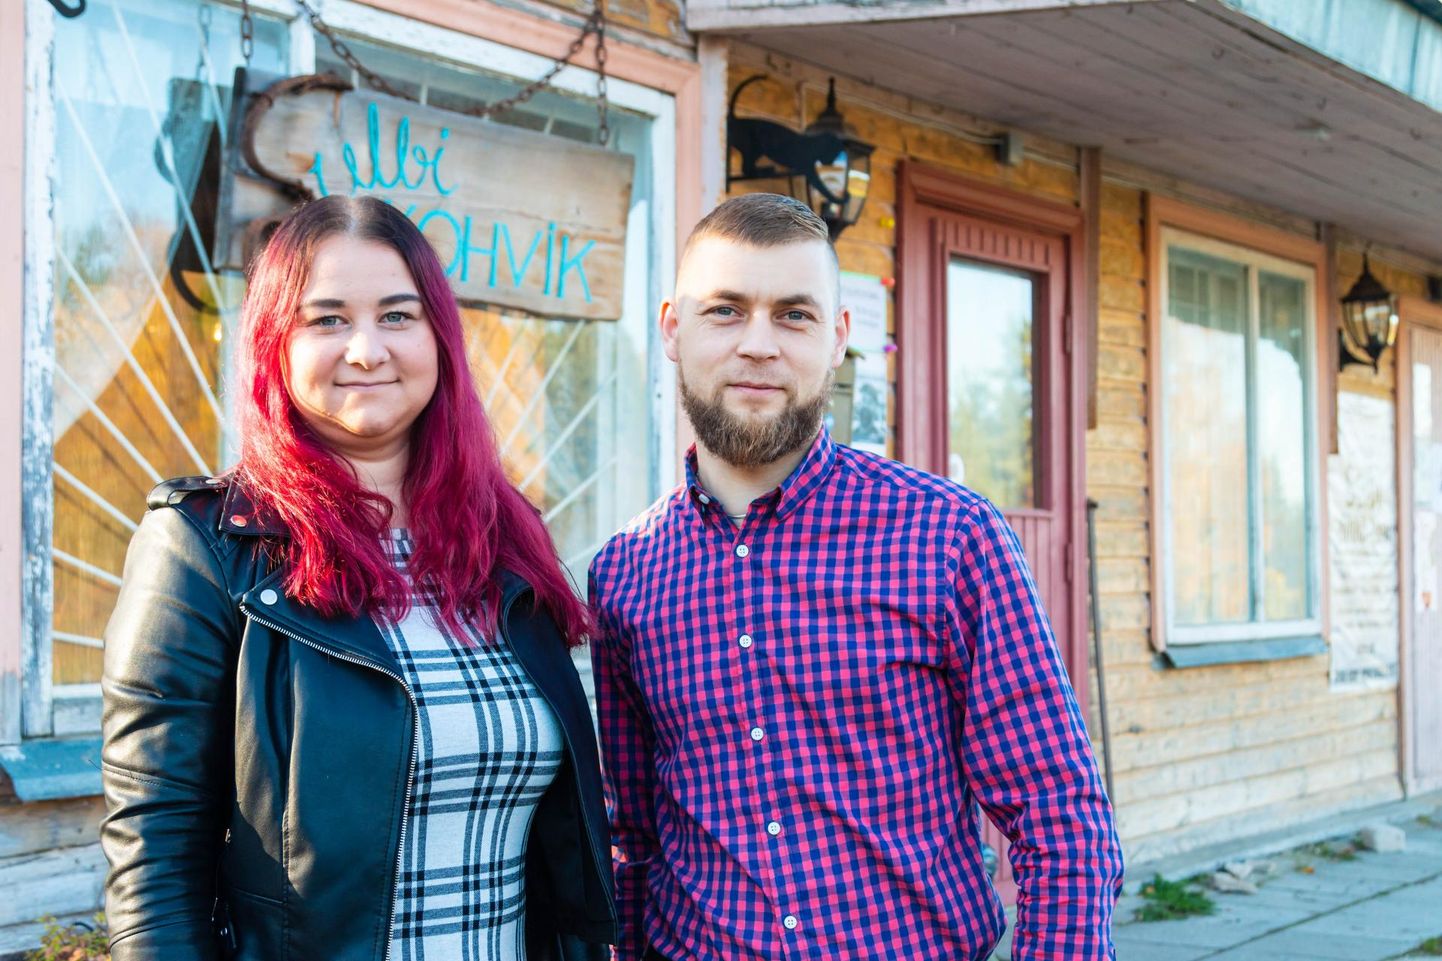 Noored ettevõtjad Indrek Noorsalu ja Kristina Turi puhusid mahajäetud kauplusehoonele elu sisse ning nüüd tegutseb seal teist aastat Sulbi kohvik.